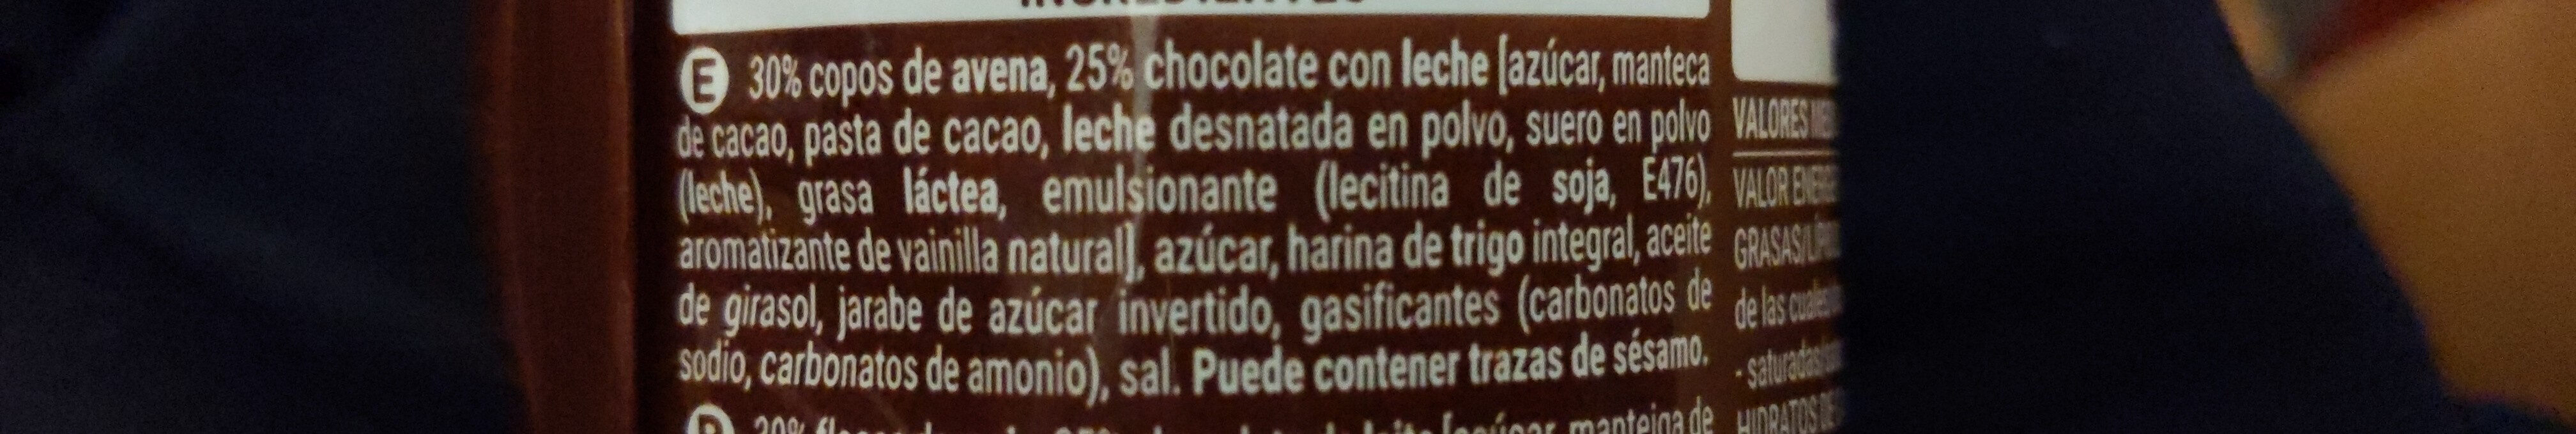 Galletas digestive de avena con chocolate - Ingredienser - es